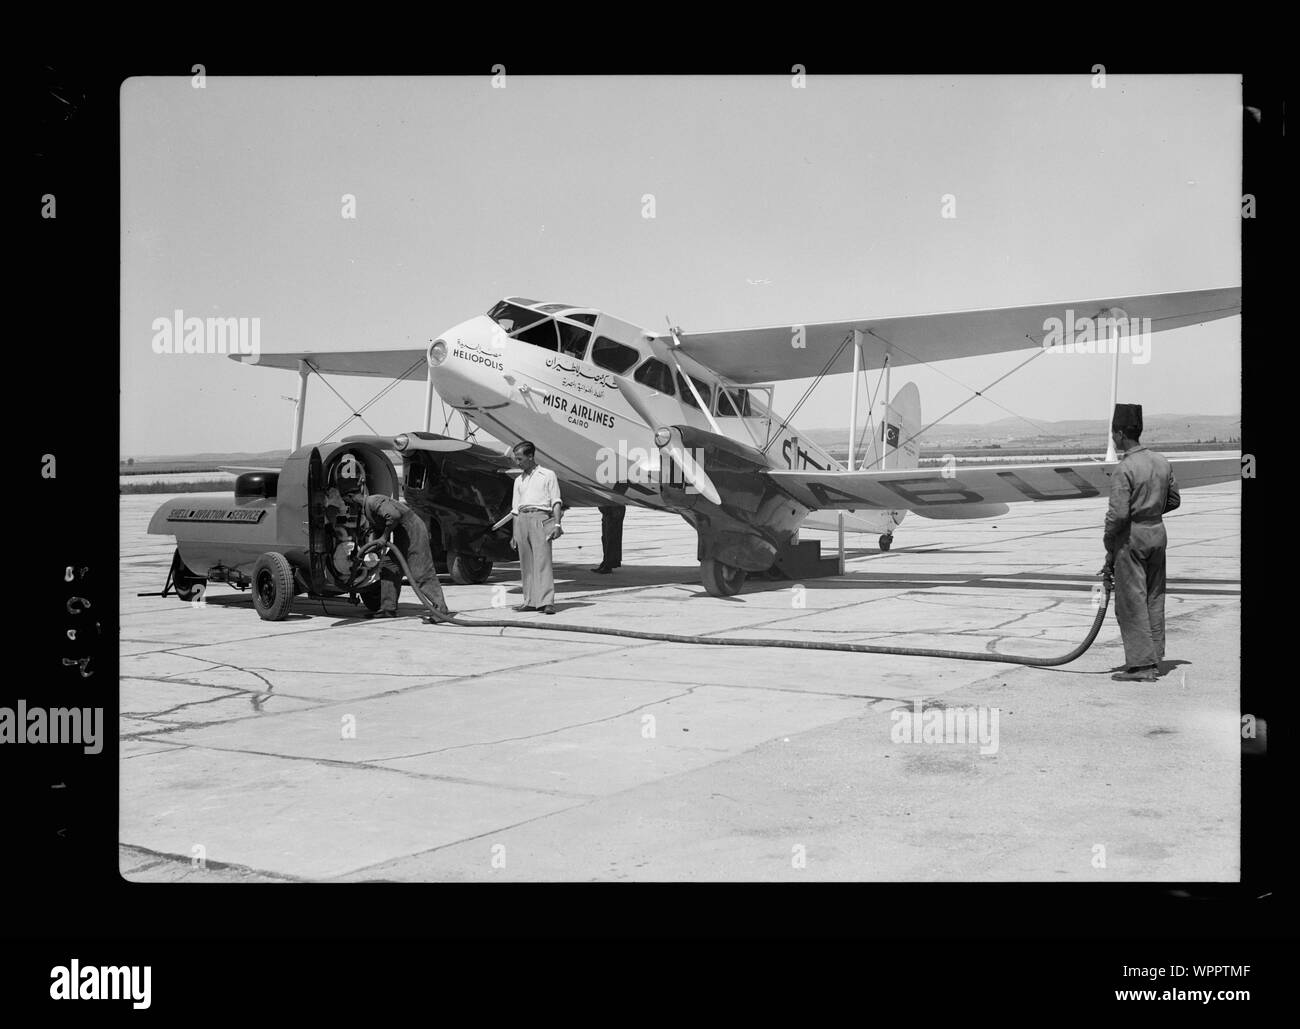 Aeropuerto de Lydda. Misr repostaje de aviones Foto de stock